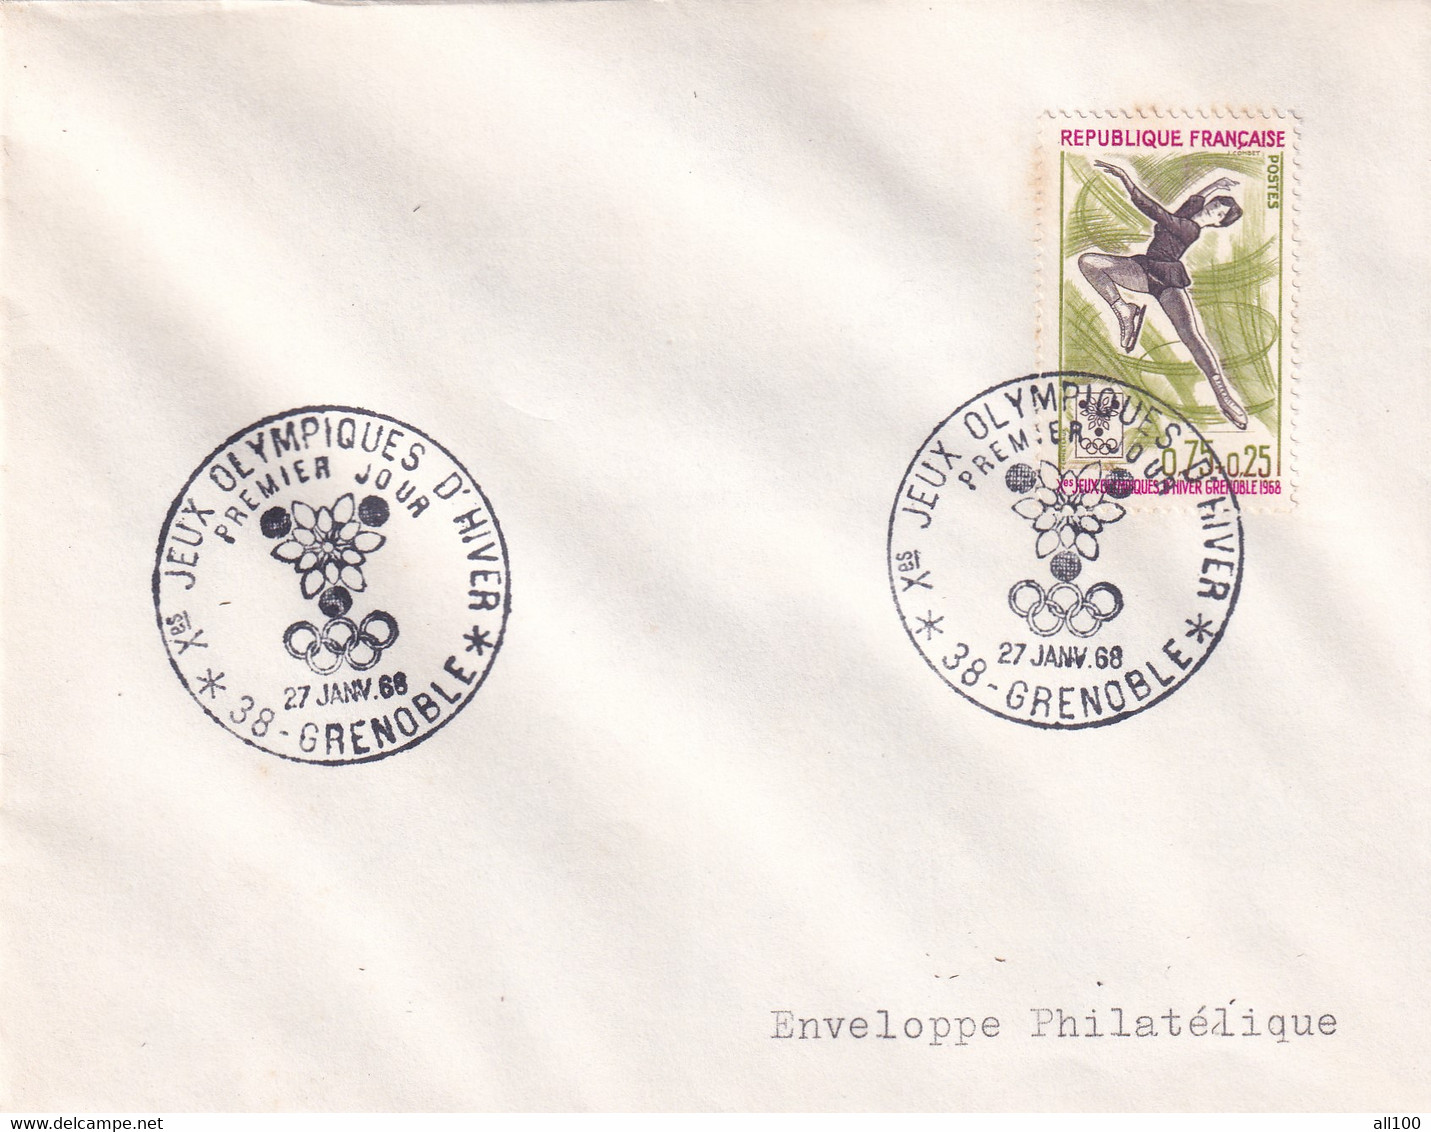 A21887 - Jeux Olympiques D'Hiver Grenoble Cover Envelope Unused 1968 Stamp Republique Francaise Enveloppe Philatelique - Winter 1968: Grenoble